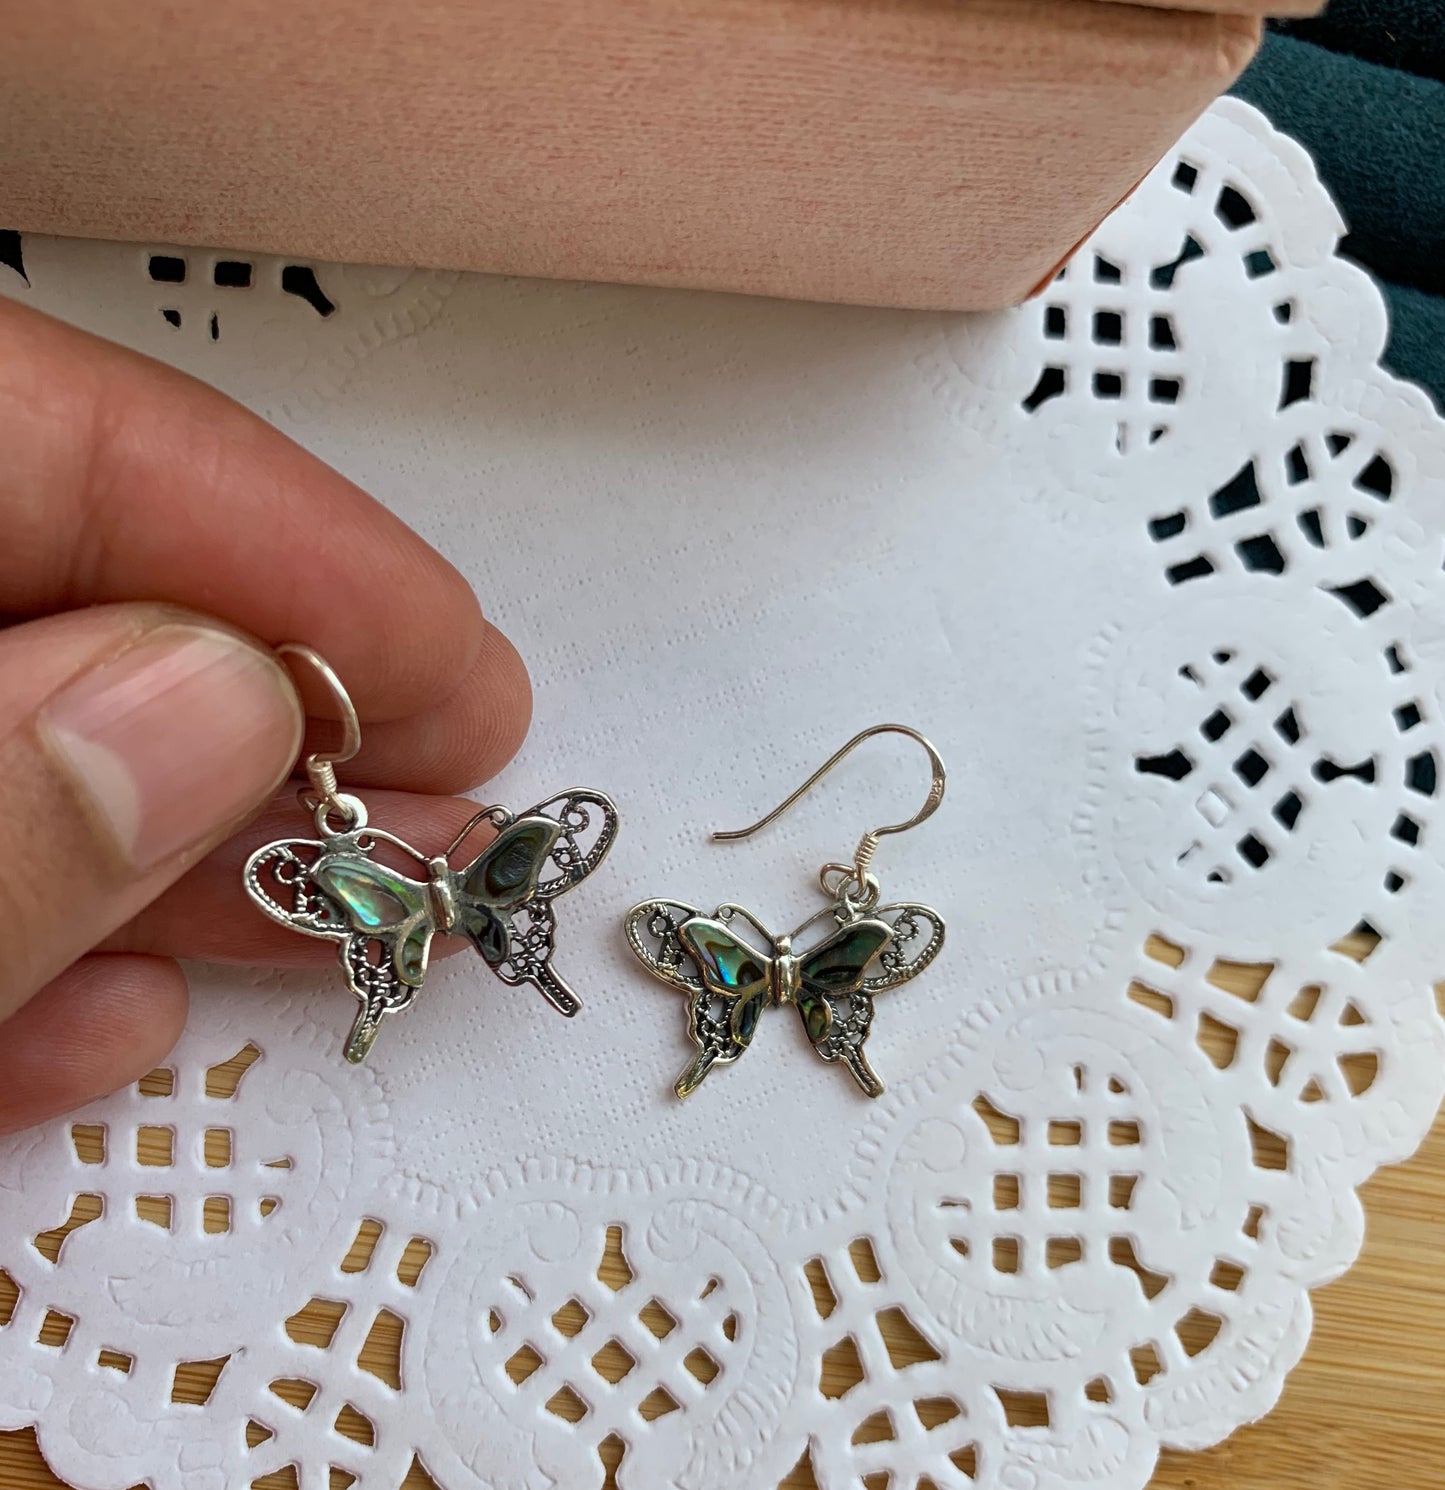 Winged Butterfly Earrings